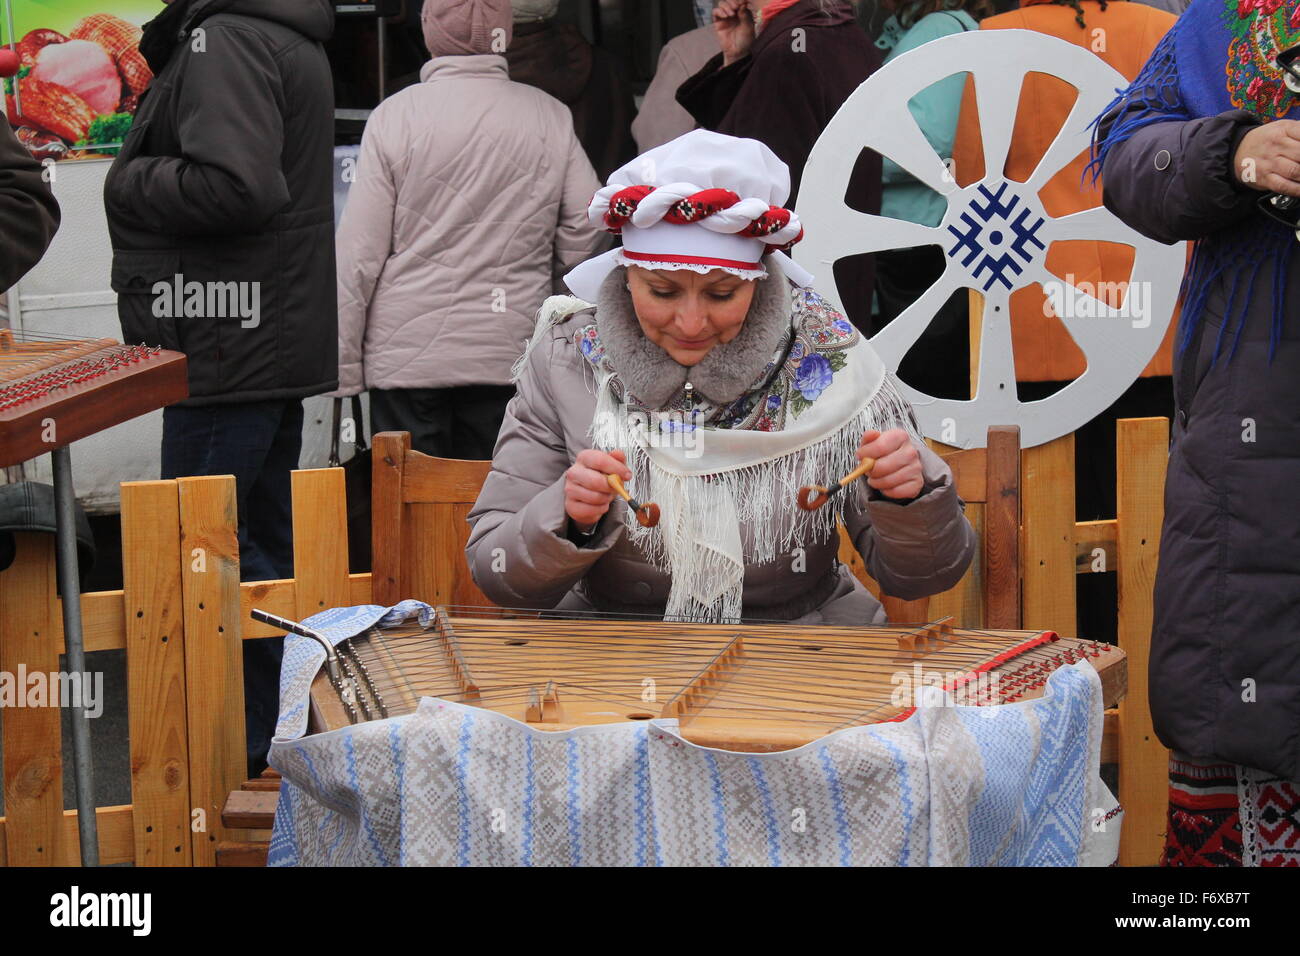 La tradición bielorrusa instrumento címbalos en celebración de la nueva cosecha, Noviembre 13, 2015, Vileyka, Bielorrusia Foto de stock